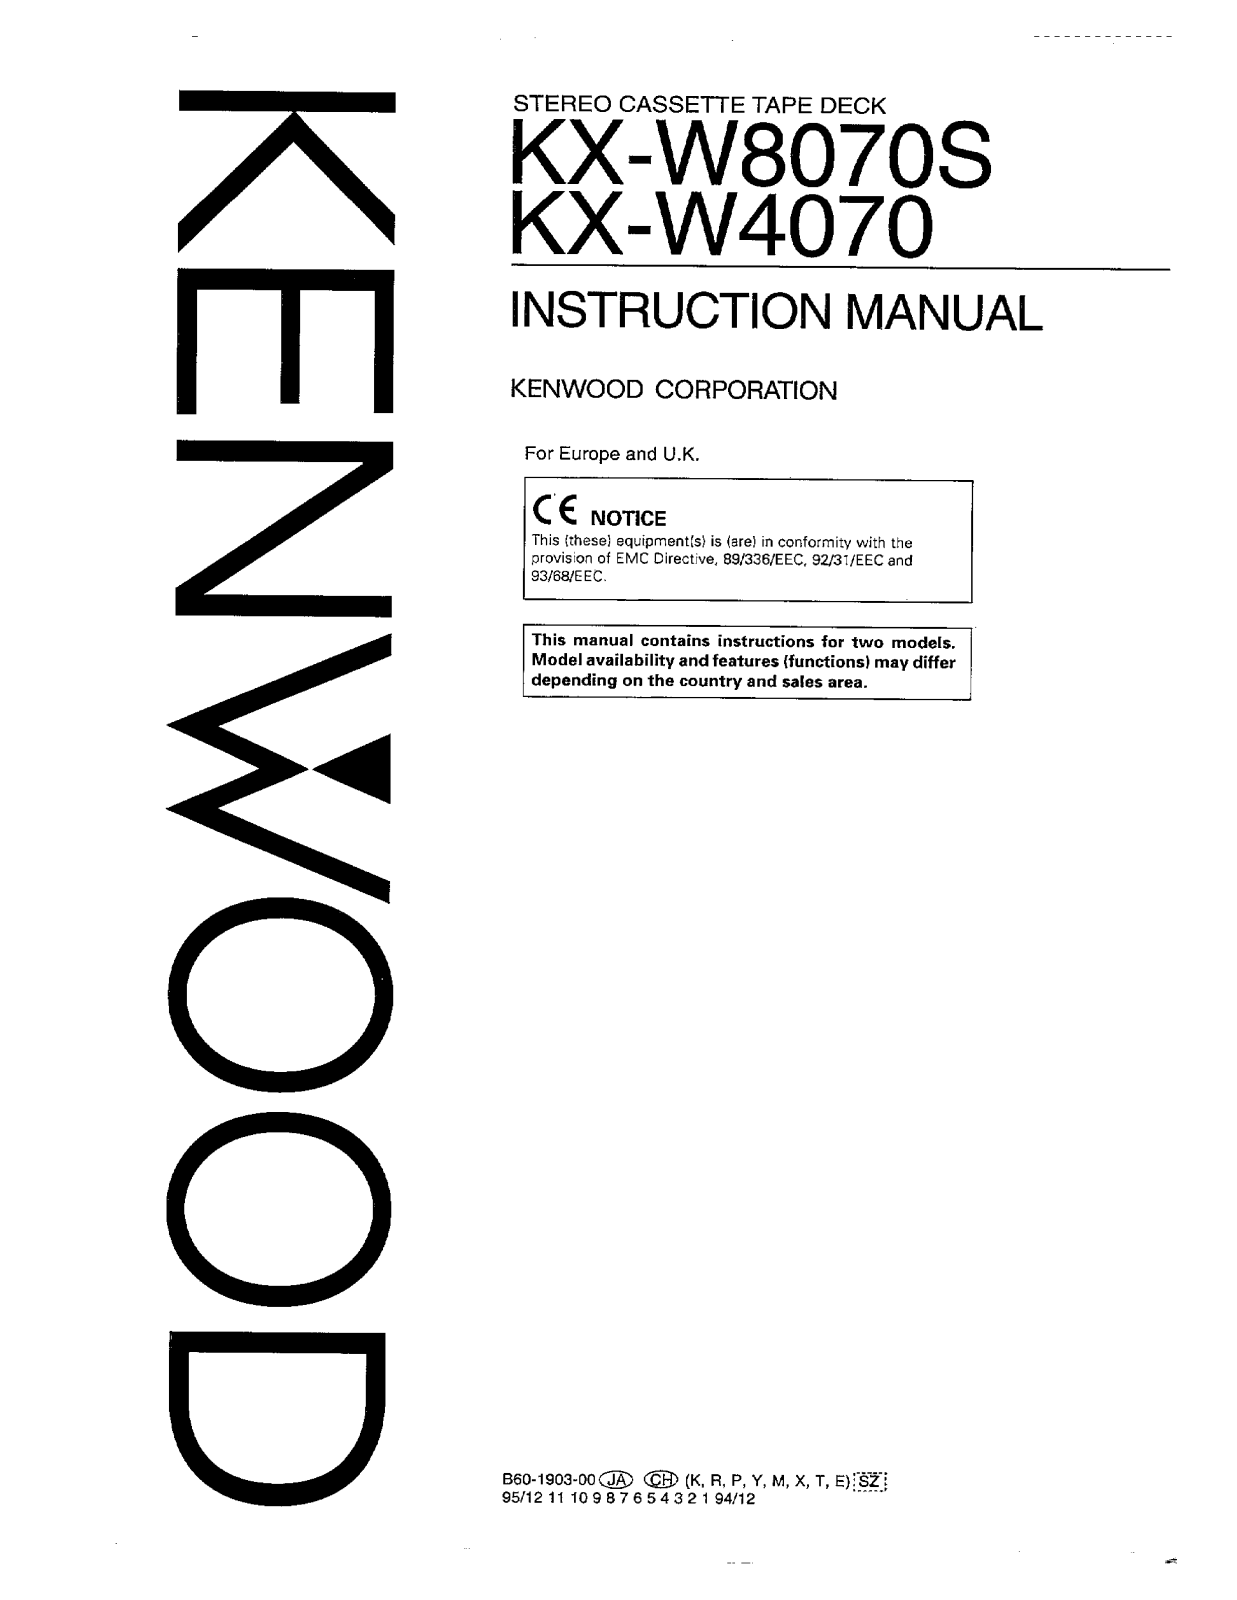 Kenwood KX-W4070, KX-W8070S Owner's Manual